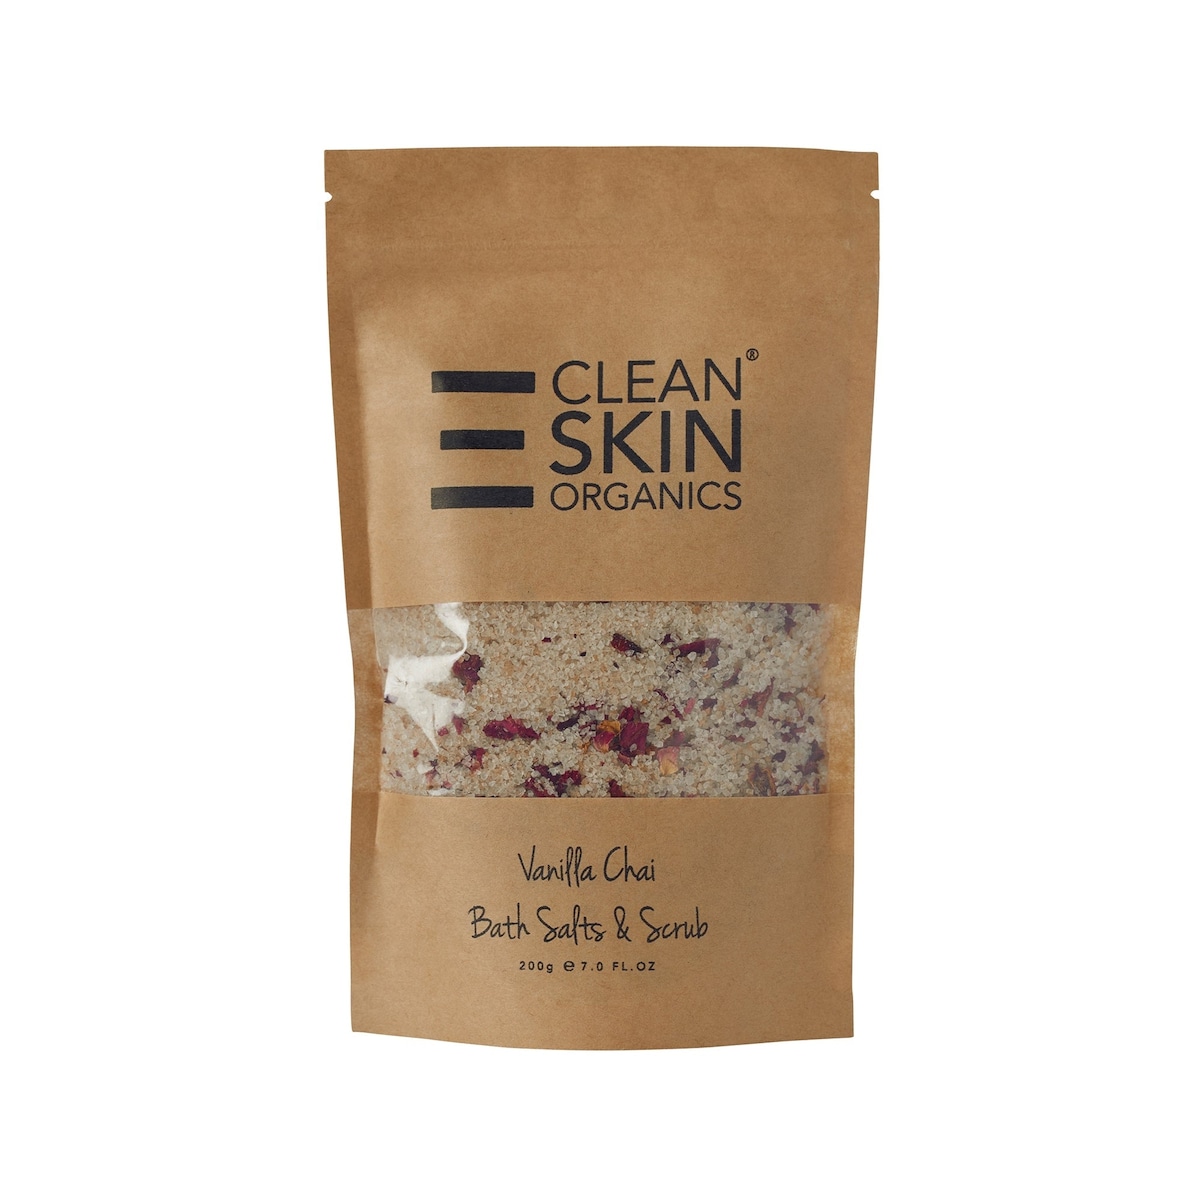 Clean Skin Organics Vanilla Chai Bath Salts and Scrub 200g